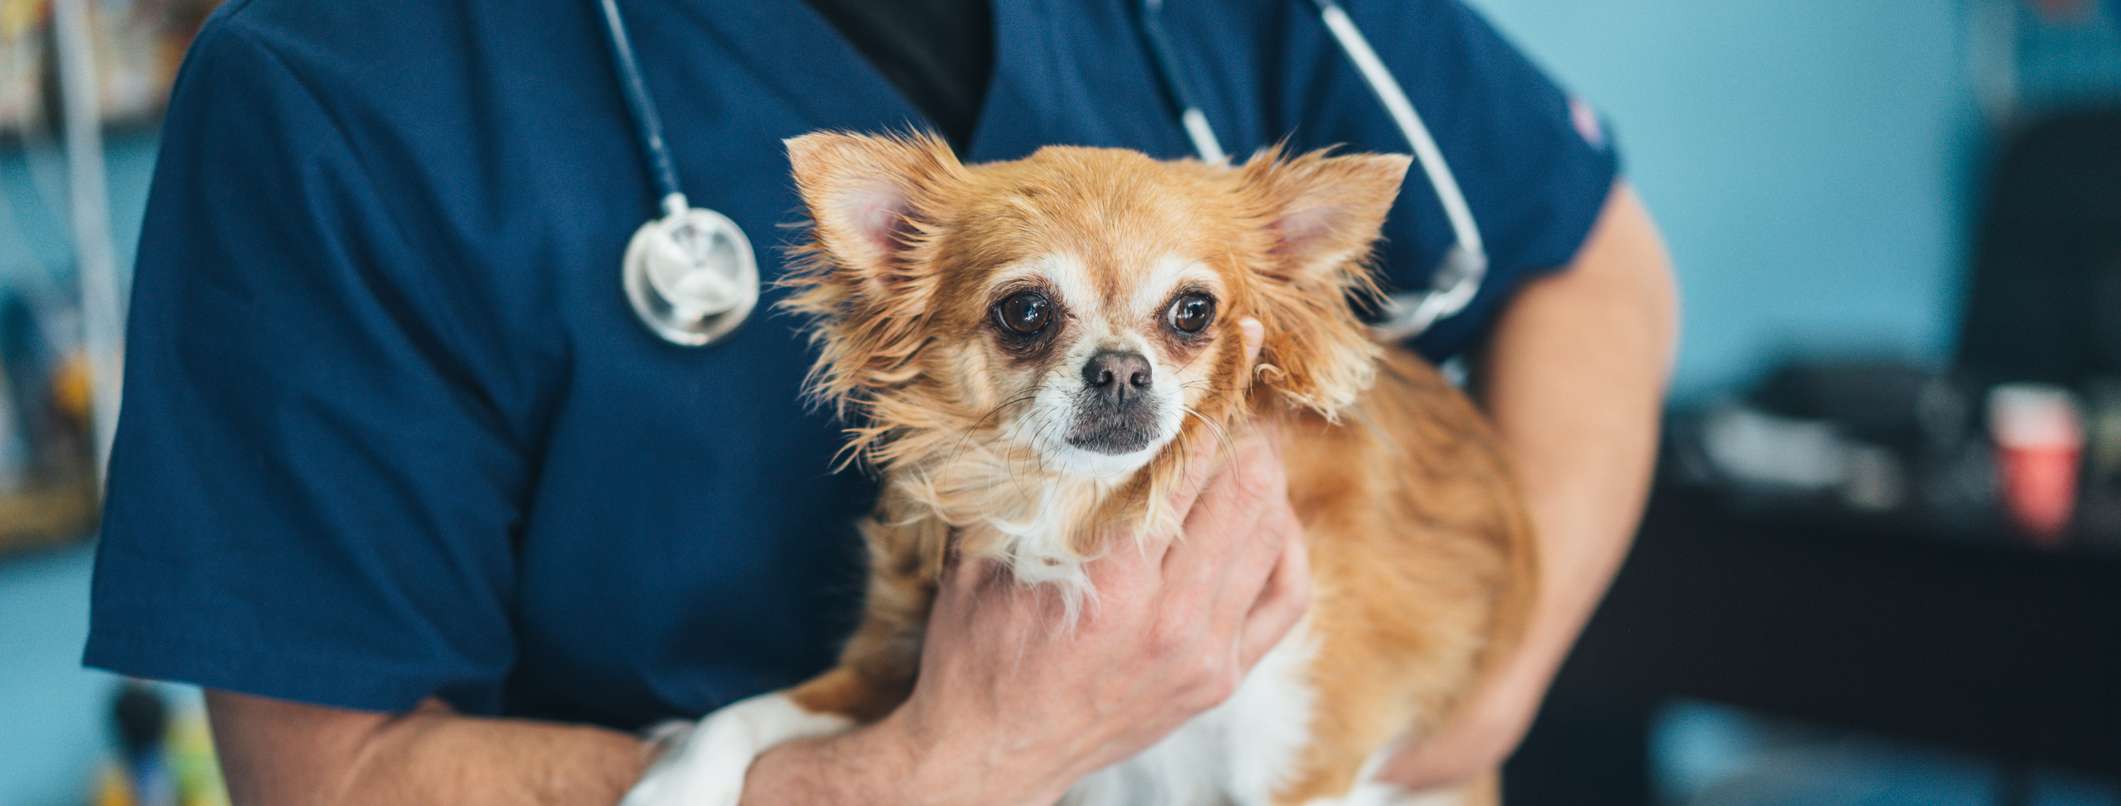 Ein Tierarzt hält einen braunen langhaar Chihuahua im Arm